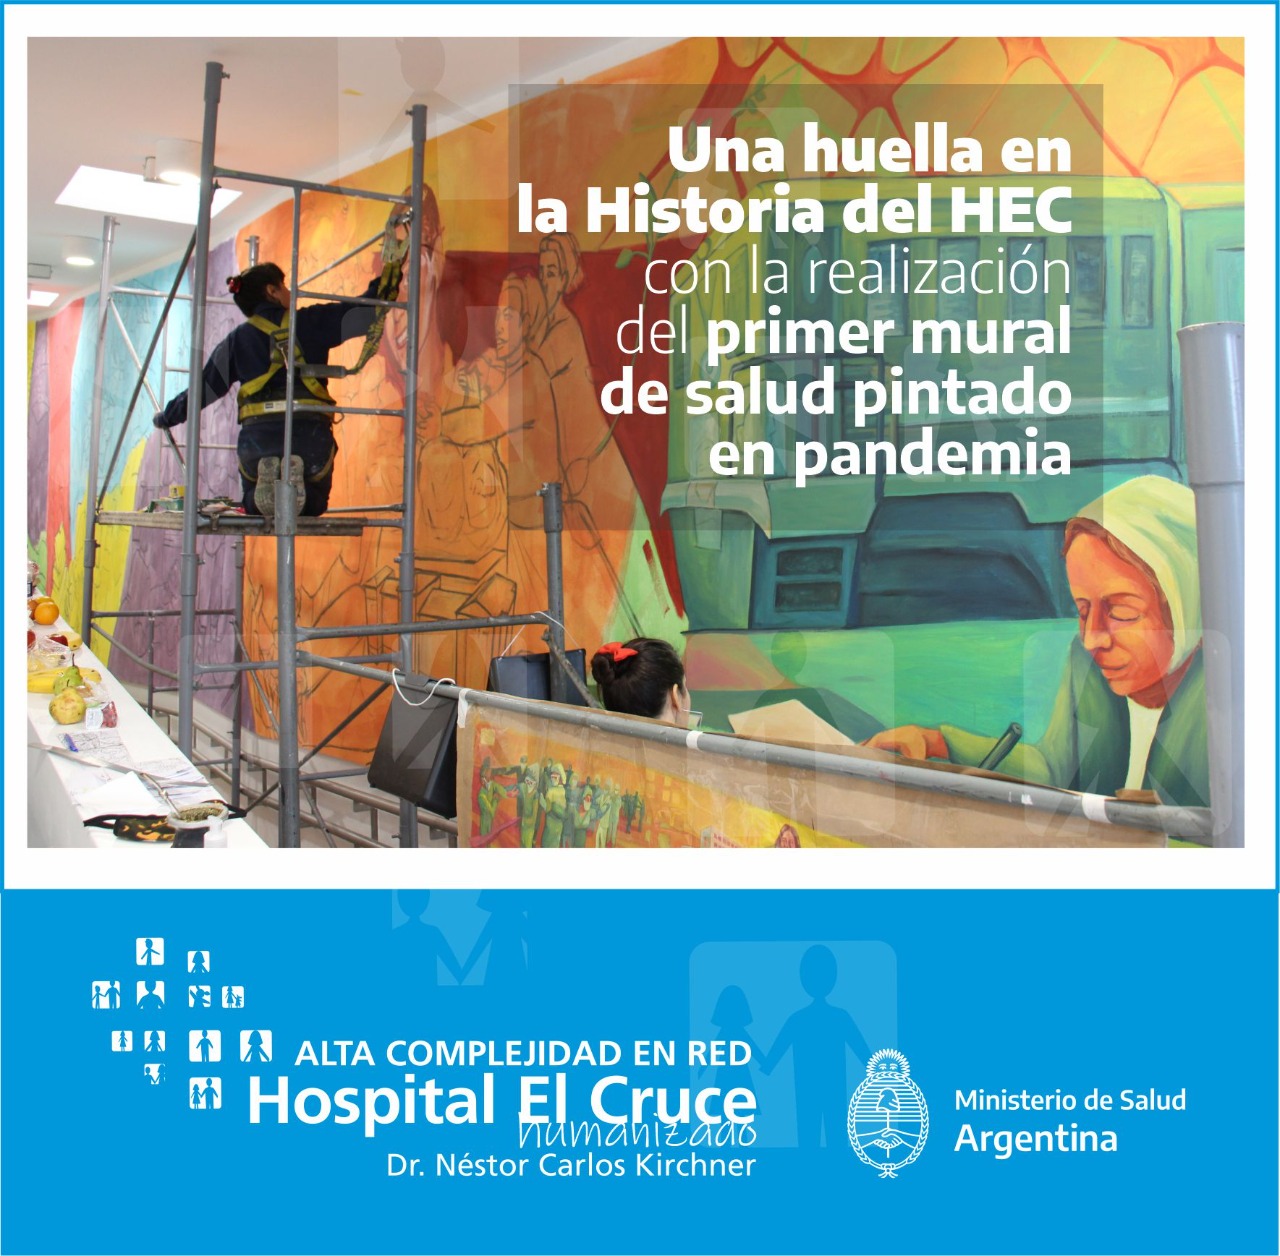 Hospital El Cruce: Inauguran Un Mural Hecho En Pandemia Y Piden Seguir Cuidándose